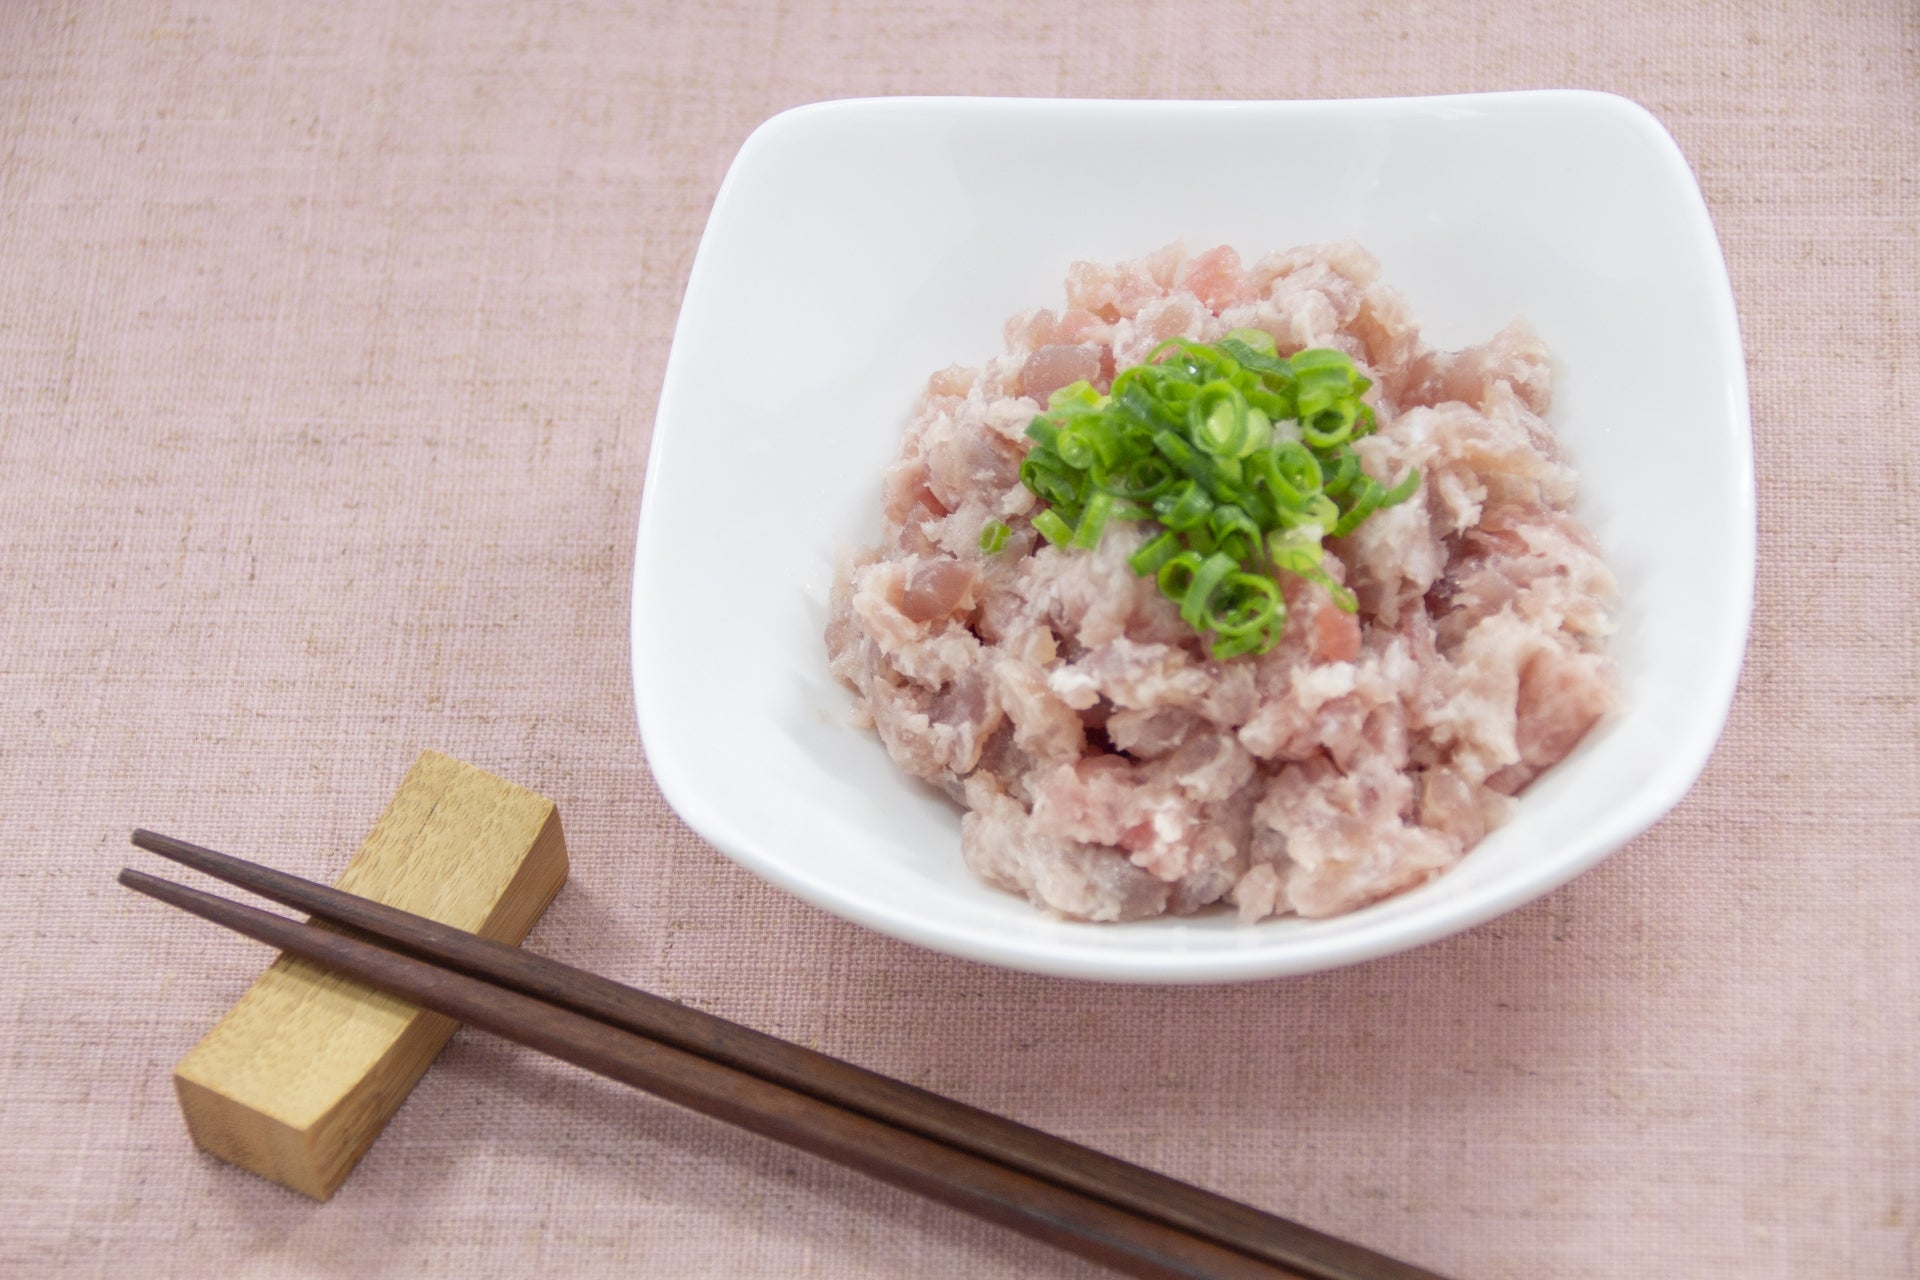 [Sashimi Grade] Negitoro (Minced Bluefin Tuna) from Misaki Fishing Port (200g)